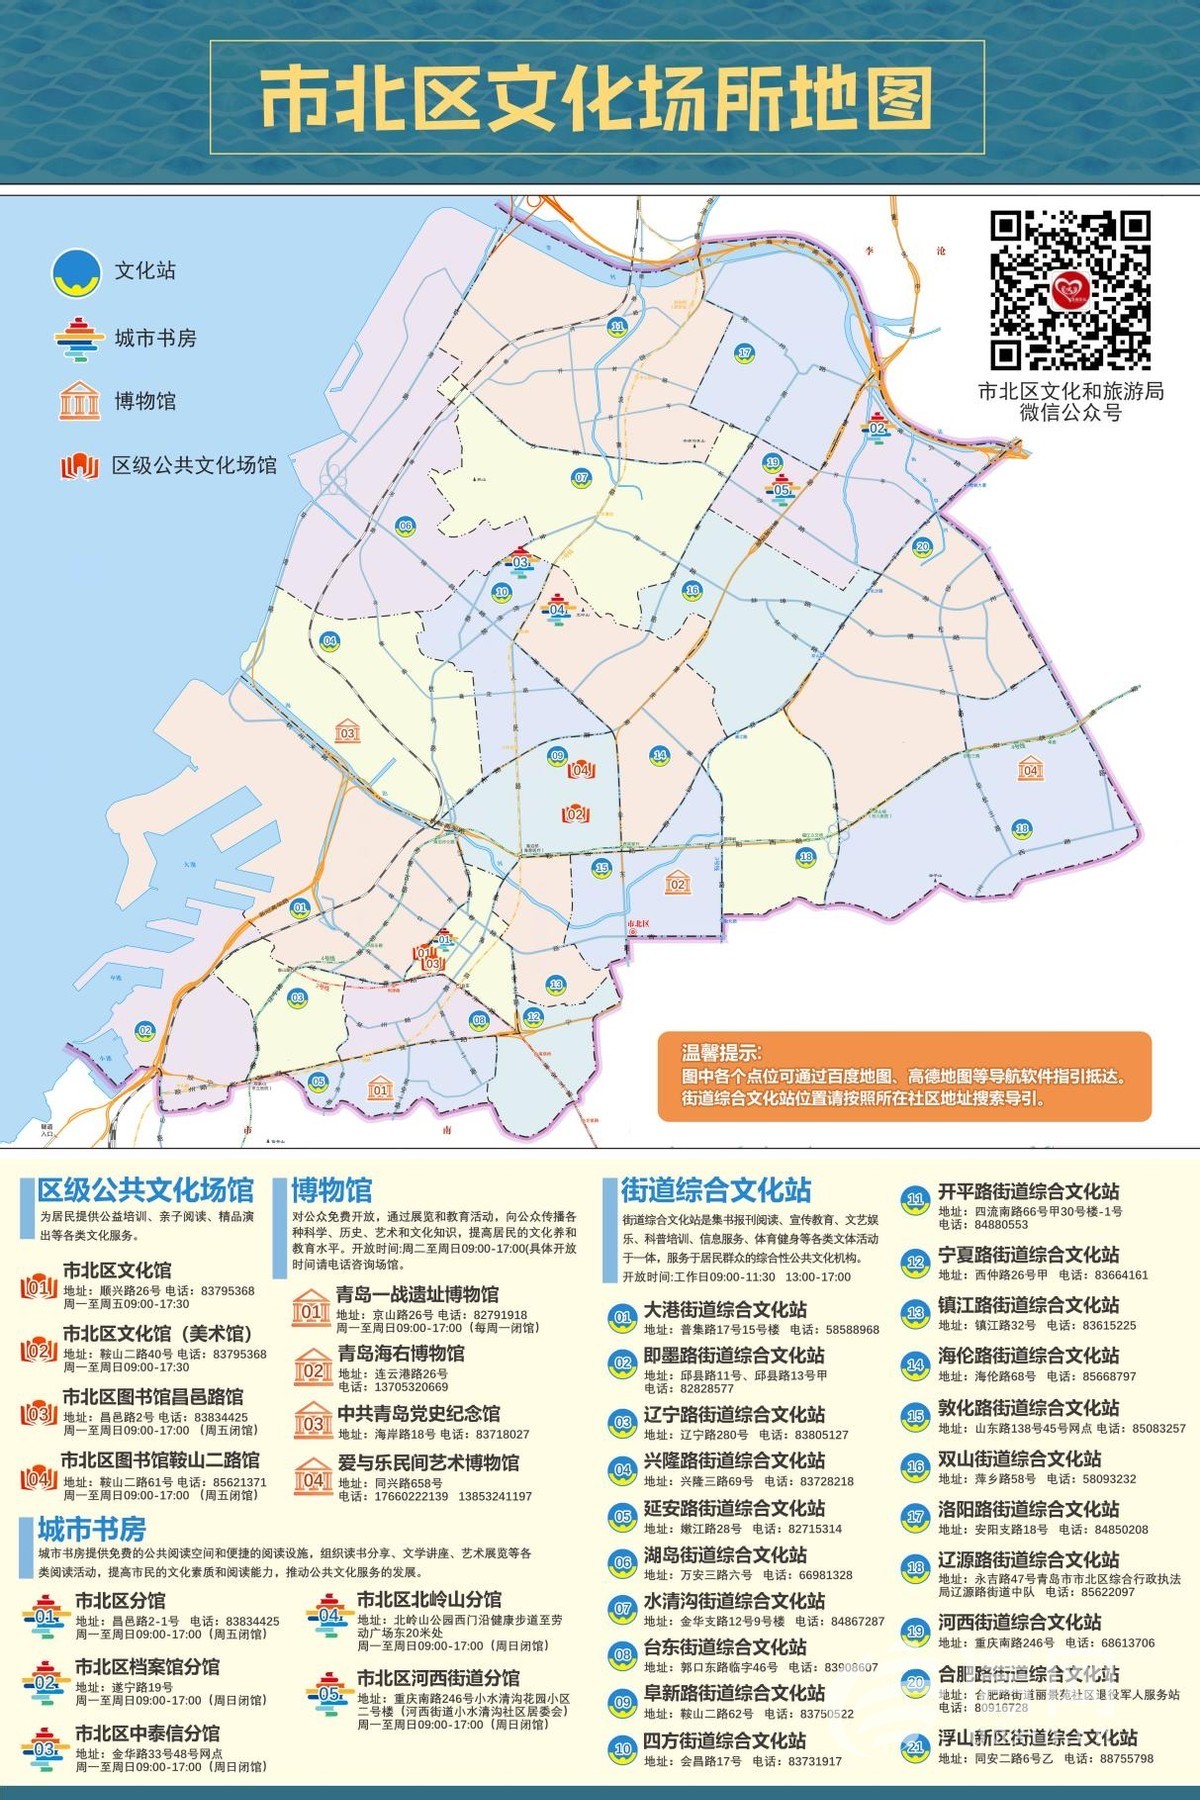 提升服务效能 青岛市北区公共文化服务地图发布